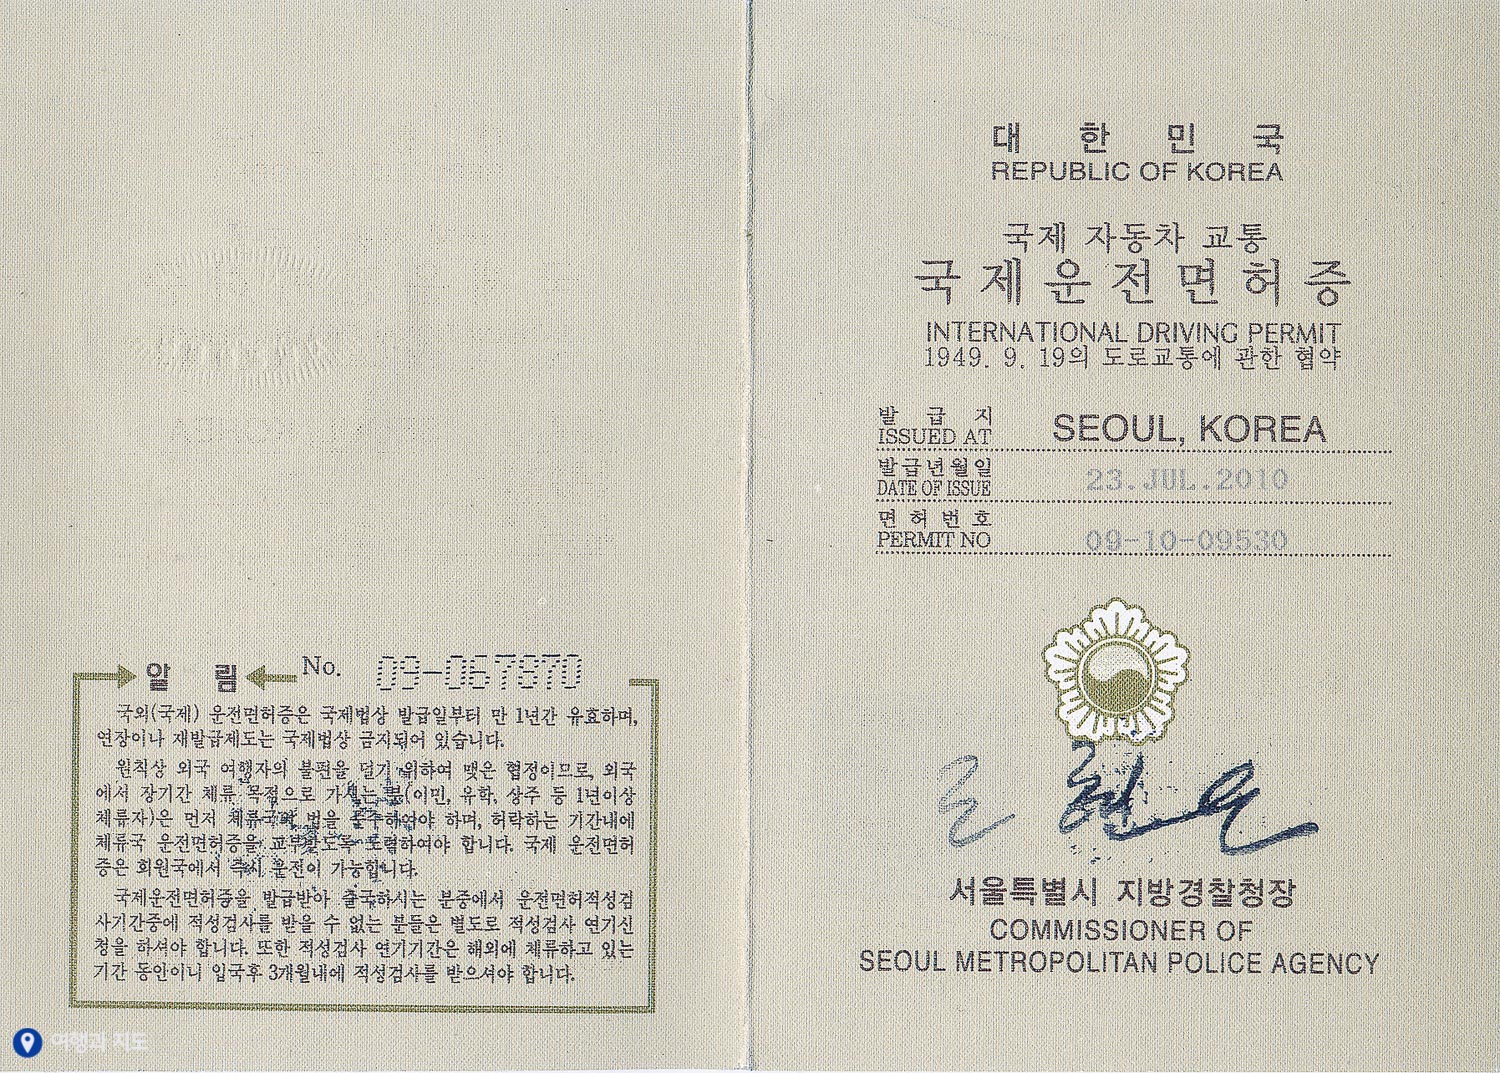 국제 운전 면허증 발급